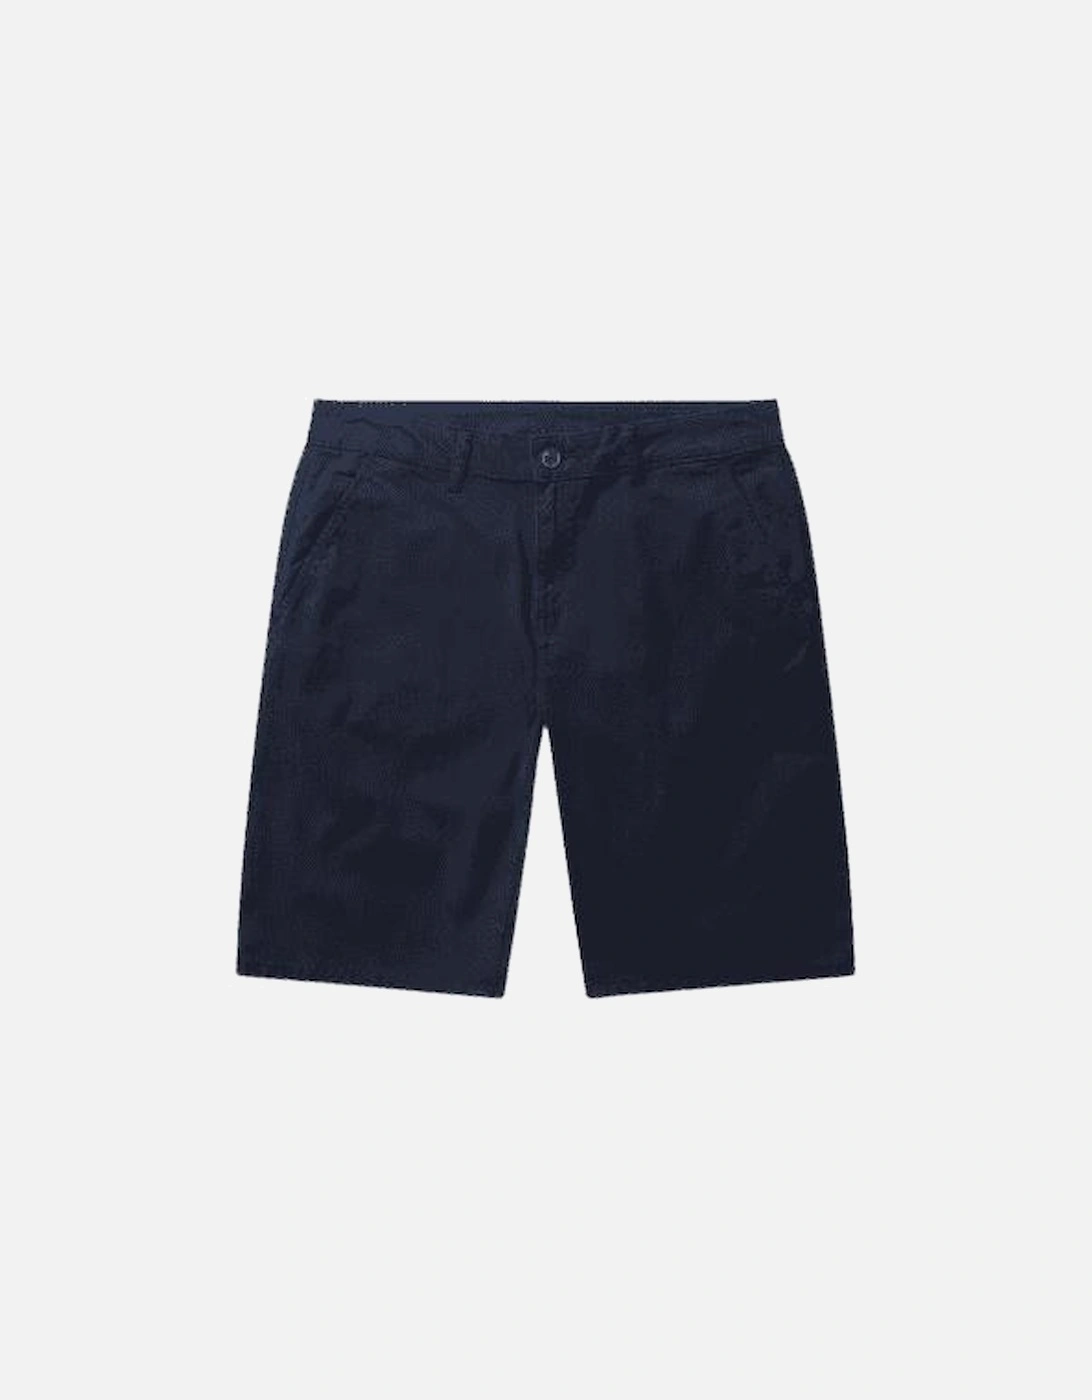 Men's Gradini Navy Chino Shorts product